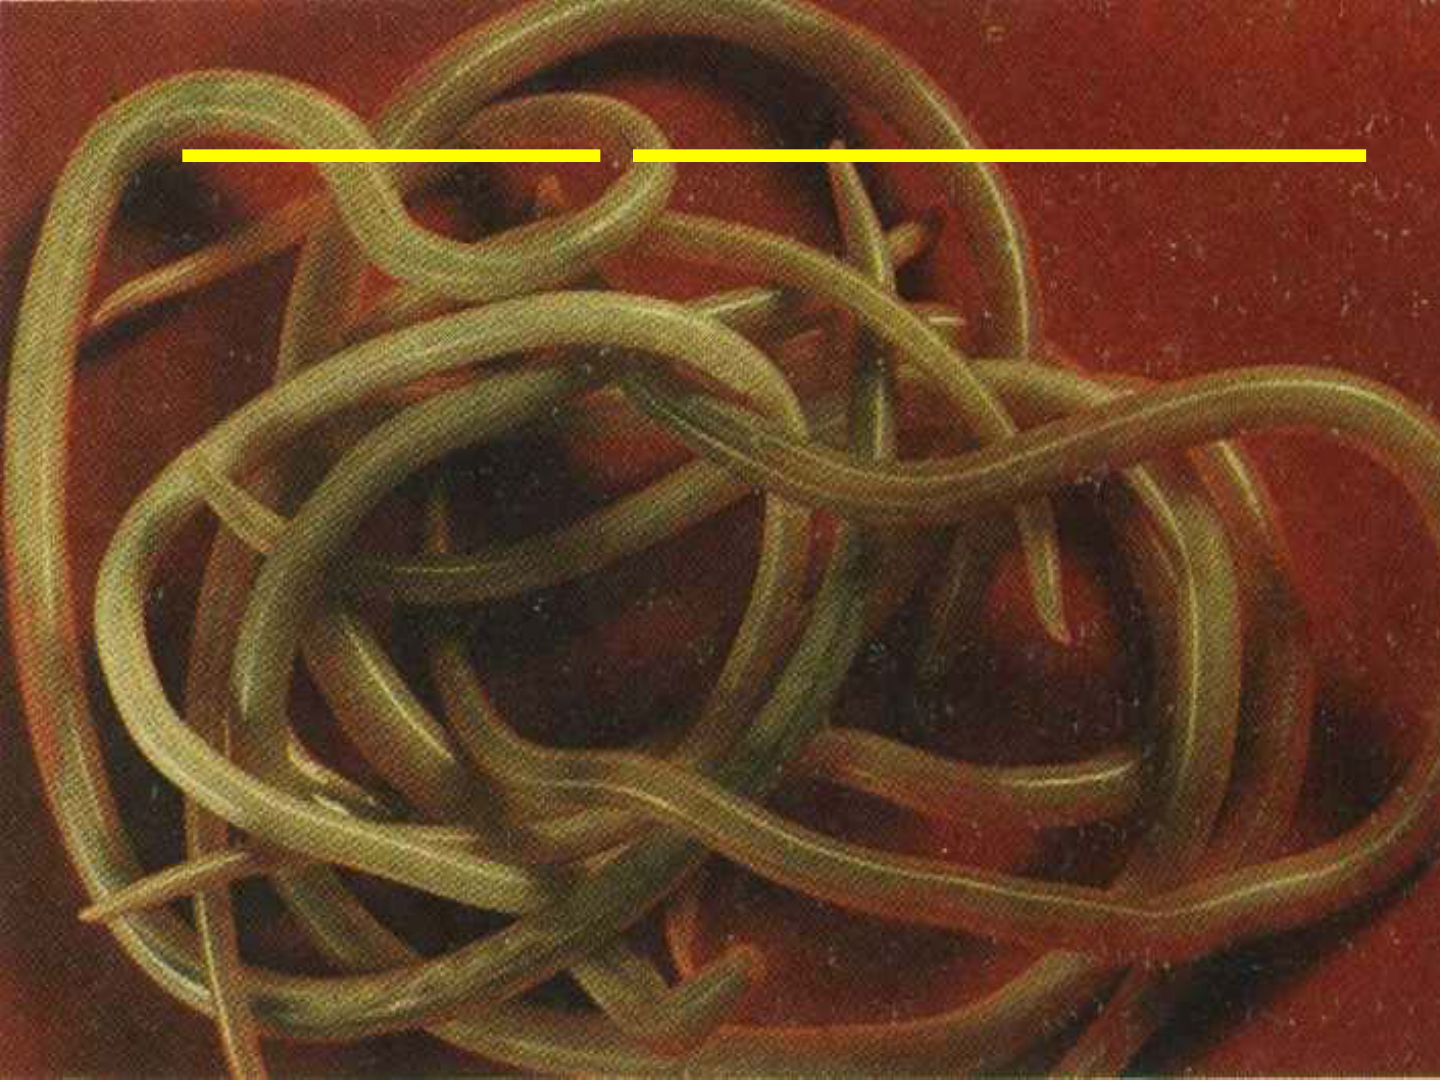 Larva plathelminthe. Utilizator:Jean/Cutia de nisip - Wikipedia